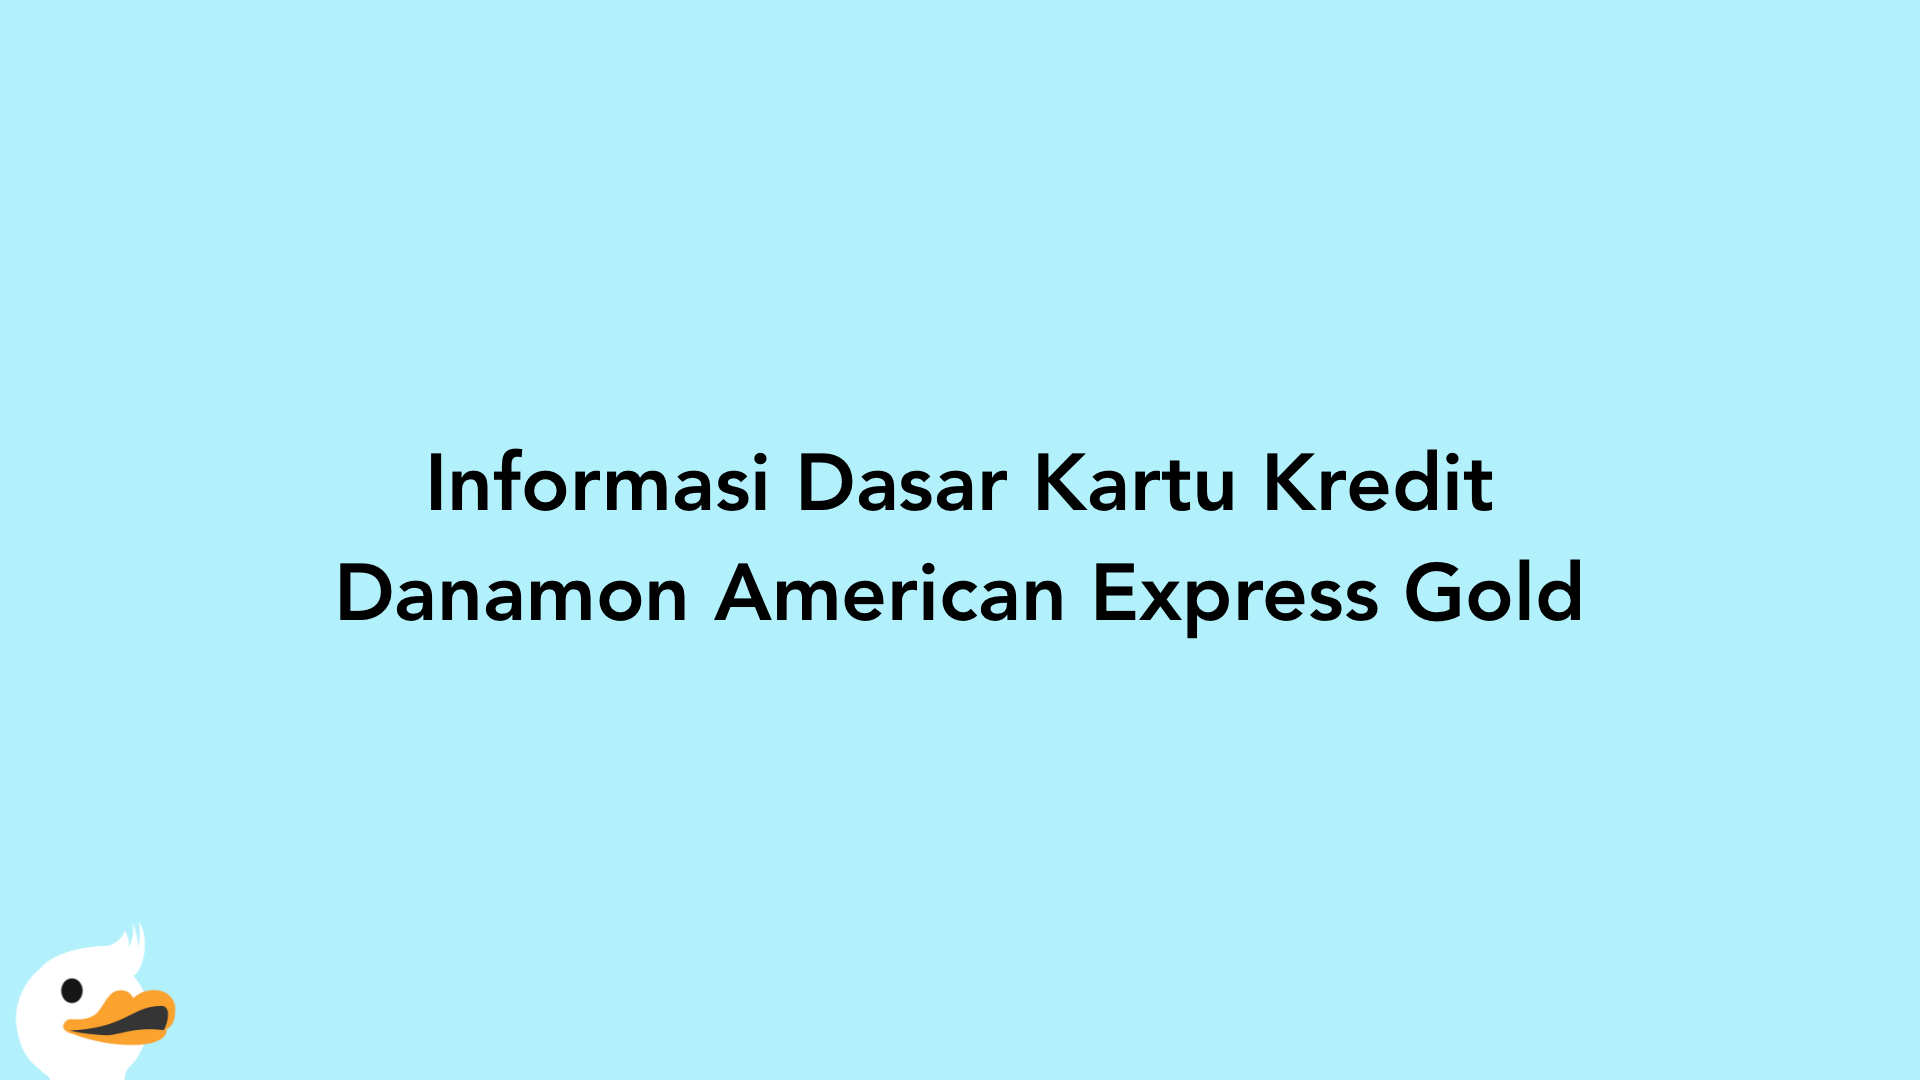 Informasi Dasar Kartu Kredit Danamon American Express Gold